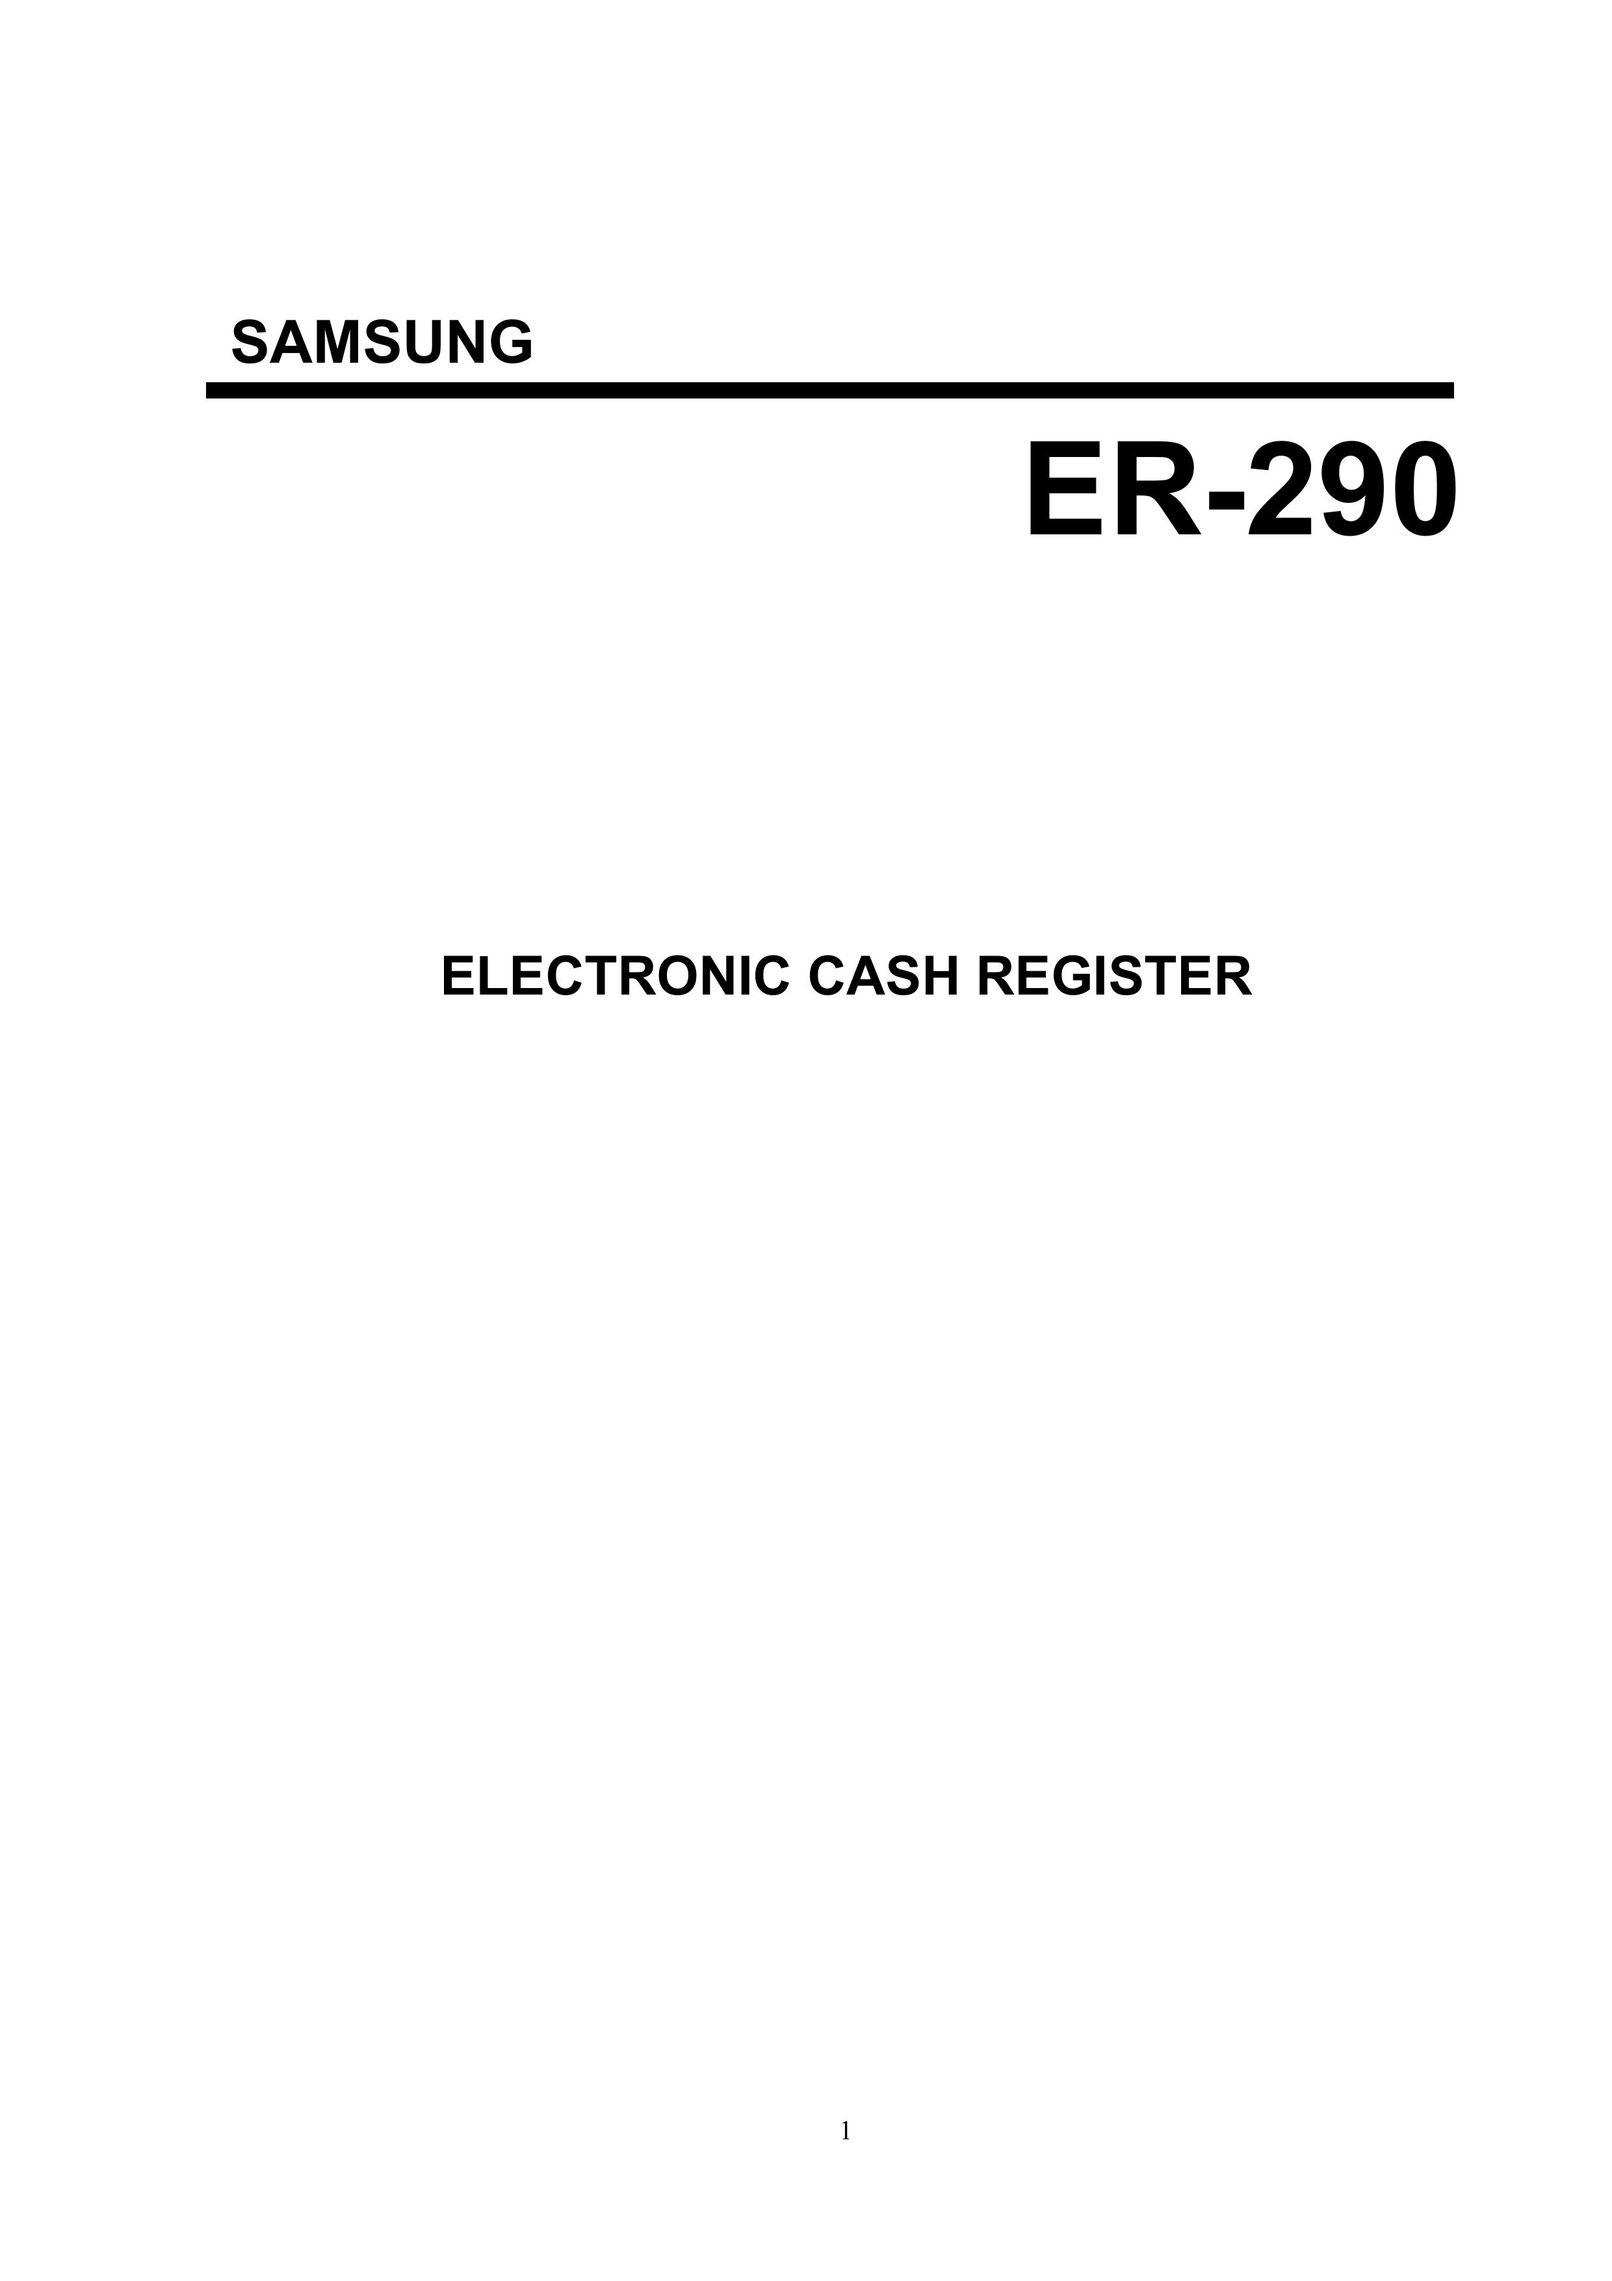 Samsung ER-290 Cash Register User Manual